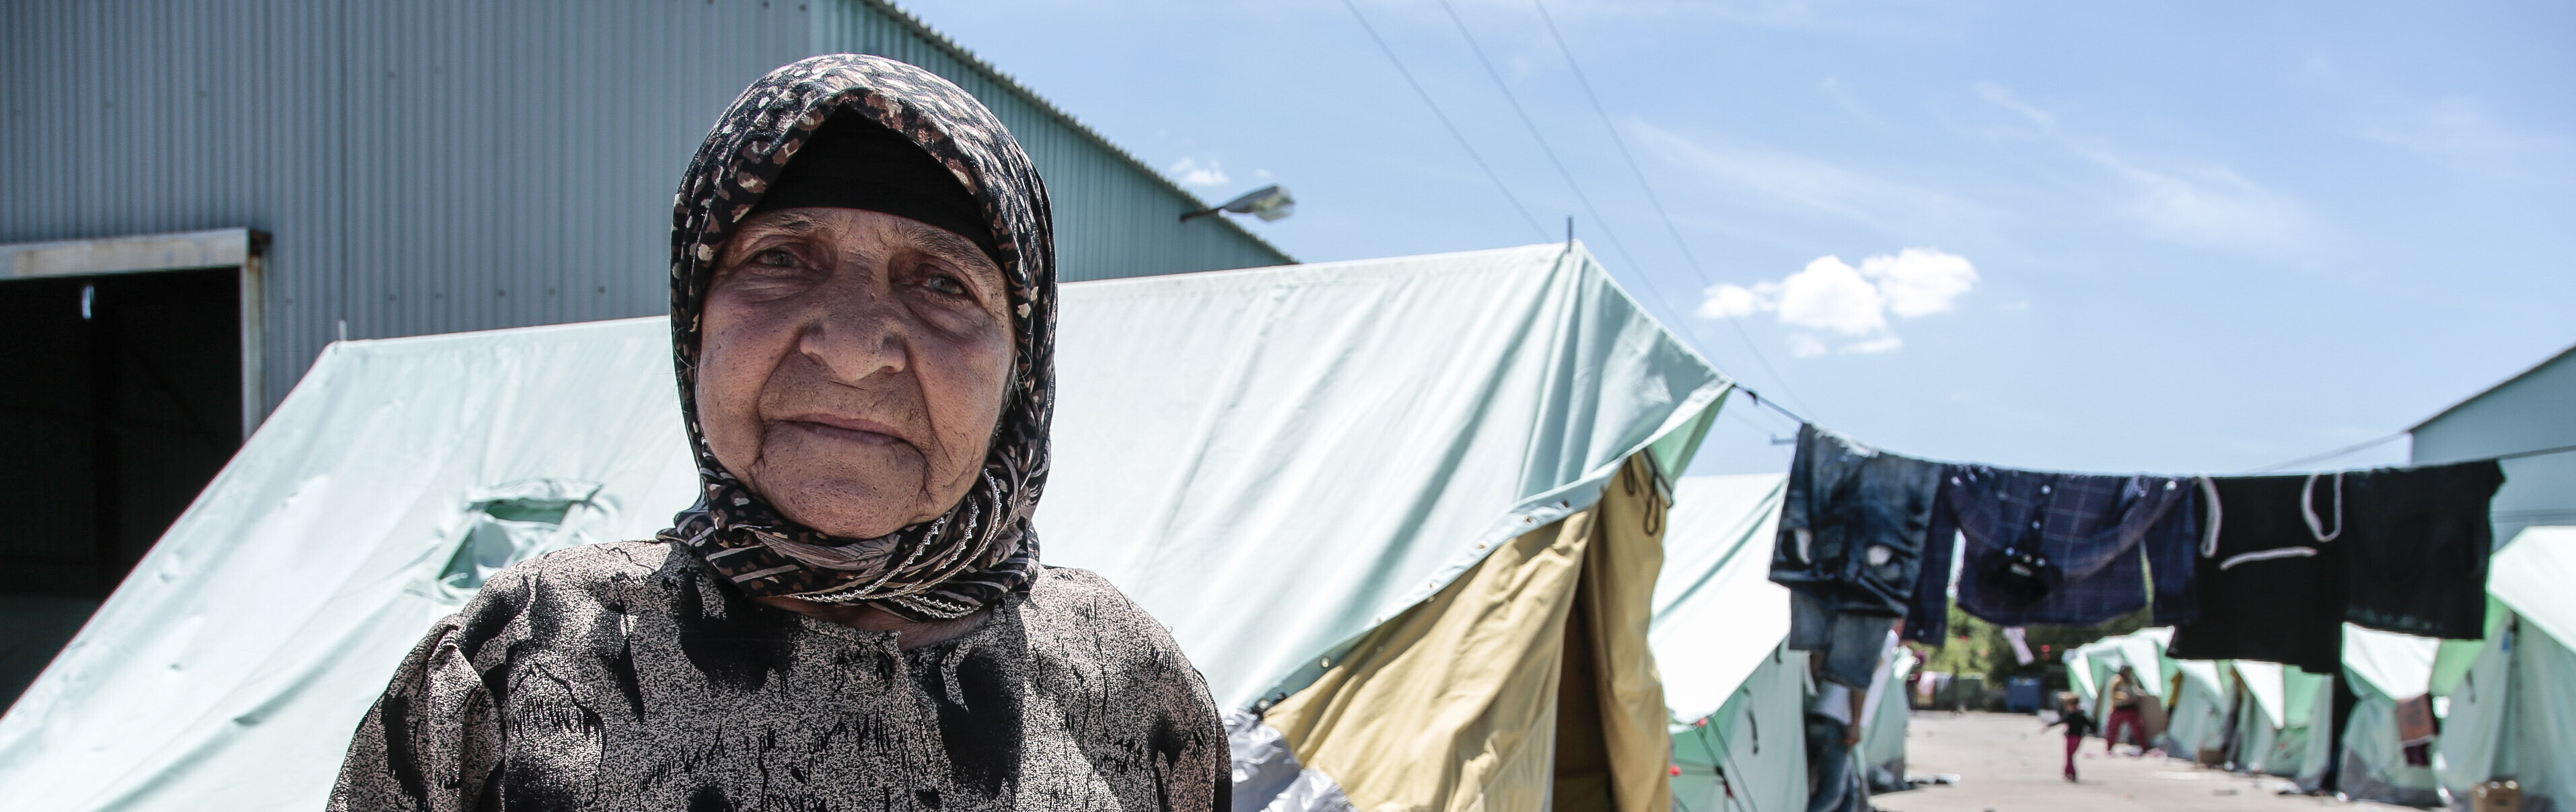 Ein Flüchtlingslager in Griechenland - Menschen jeden Alters fliehen weltweit vor Hunger und Gewalt